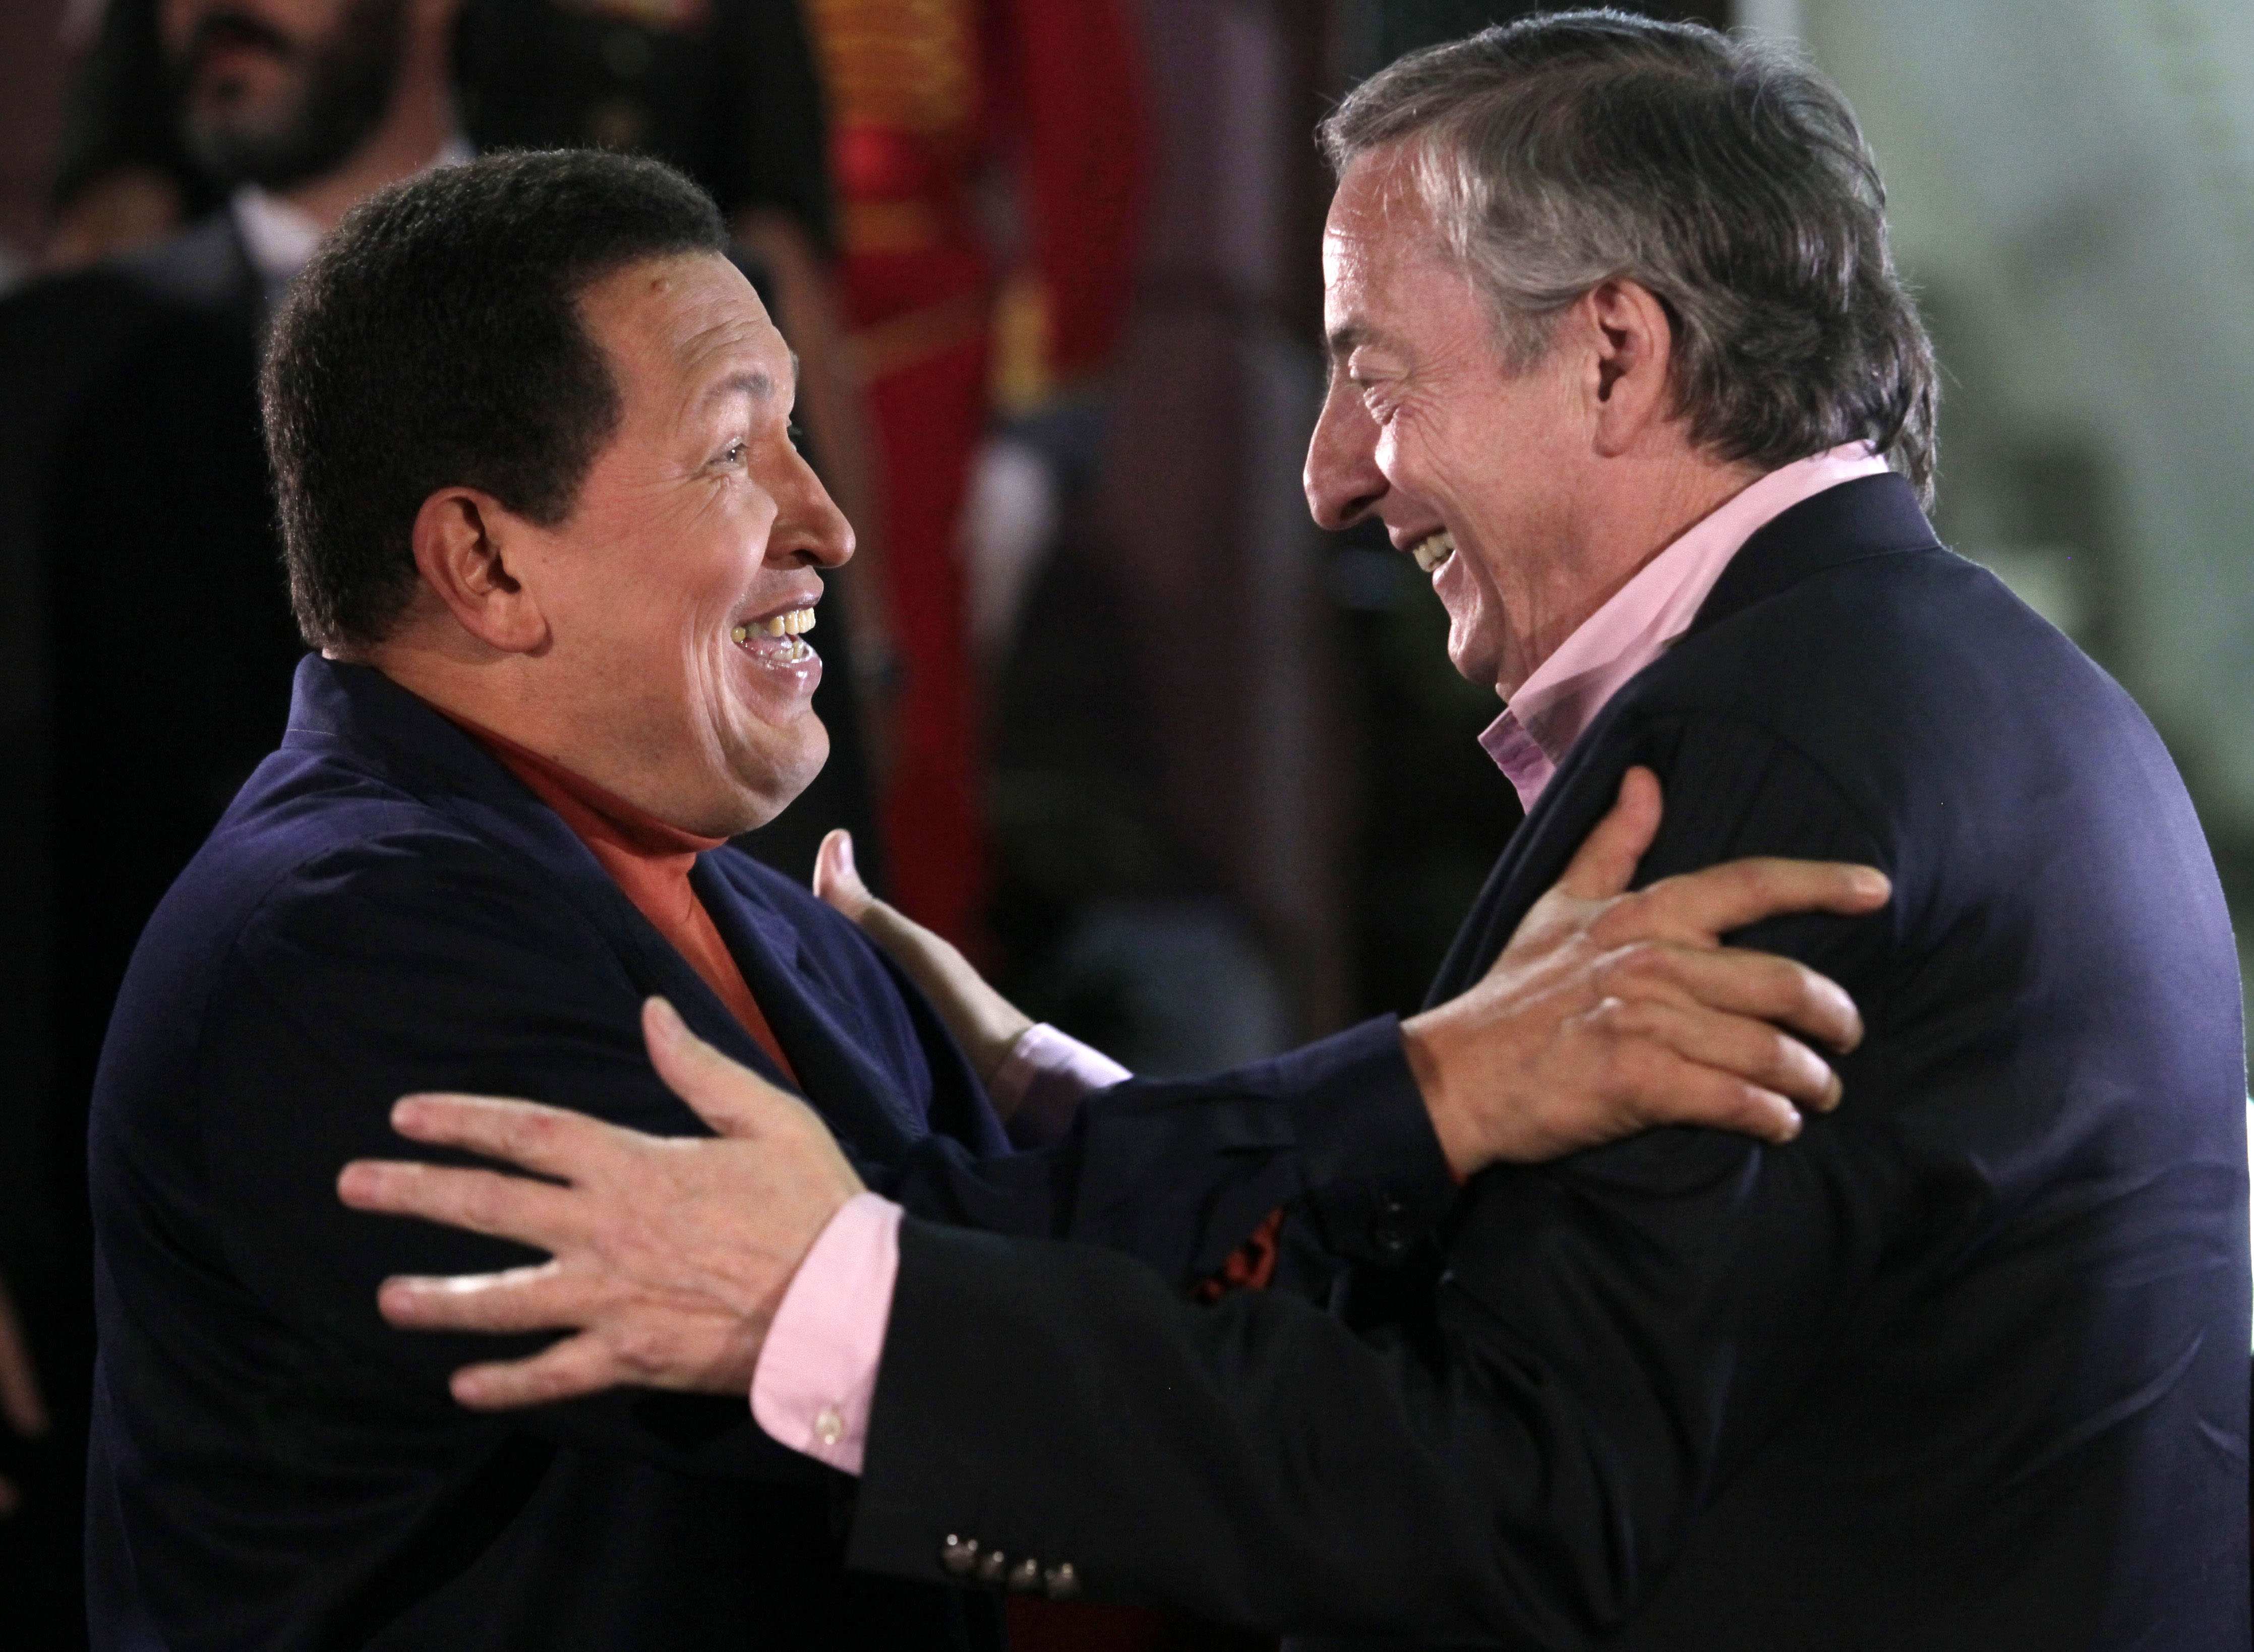 Néstor Kirchner: “Pedazo de pelotudo, decile a ese (Chávez) que los mande (millones de dólares) inmediatamente”